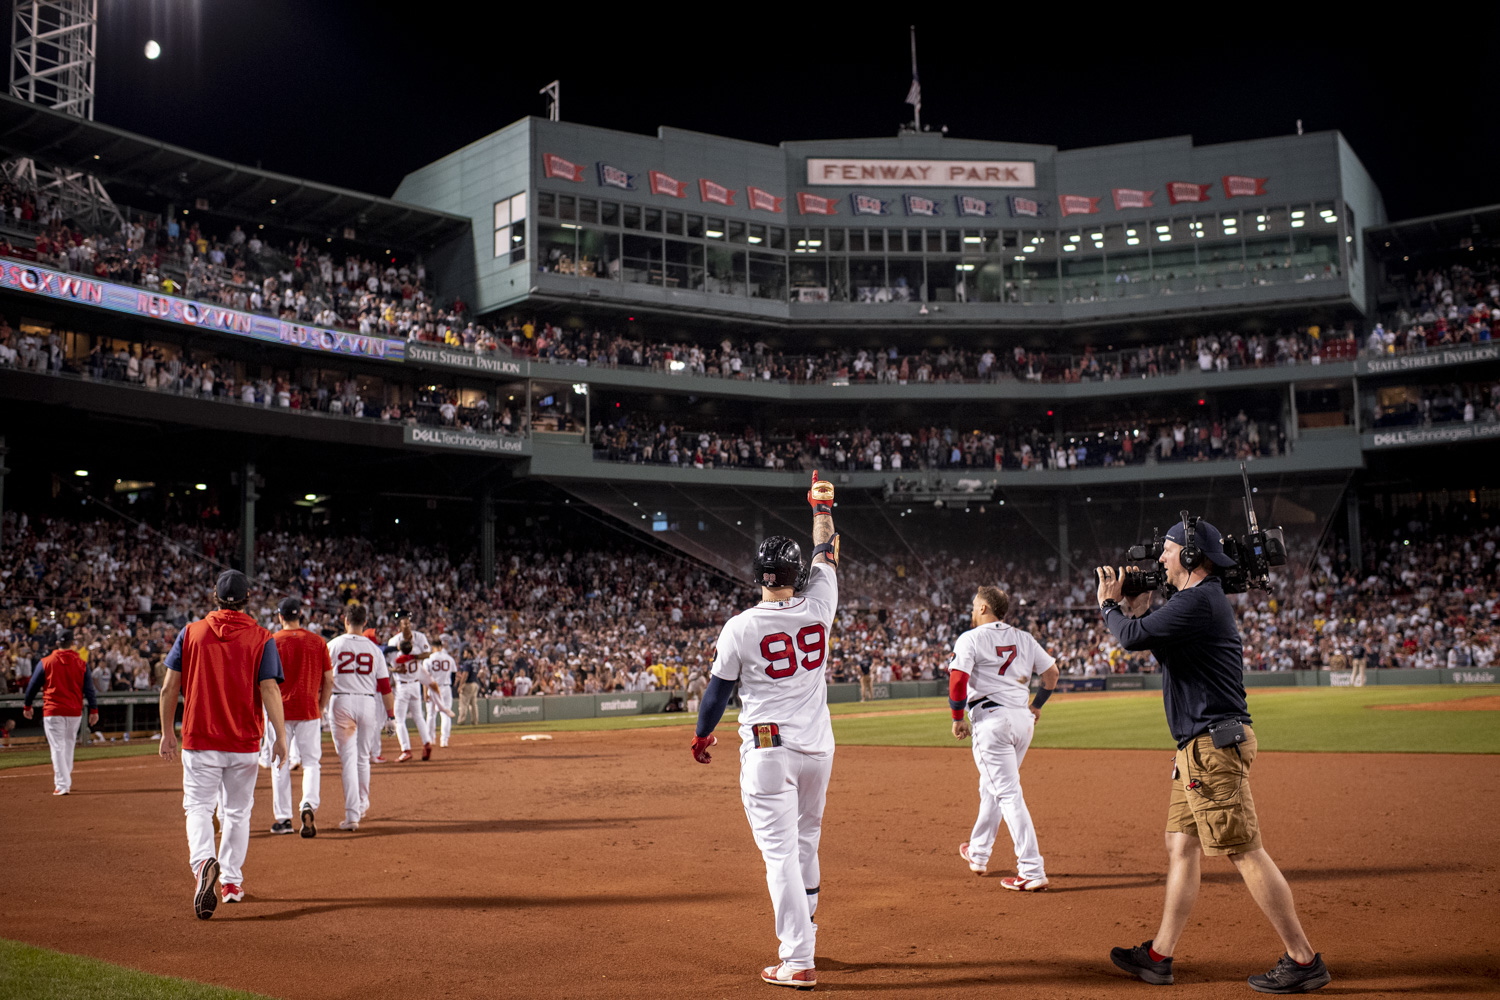 Boston's Top Photos – NBC Boston